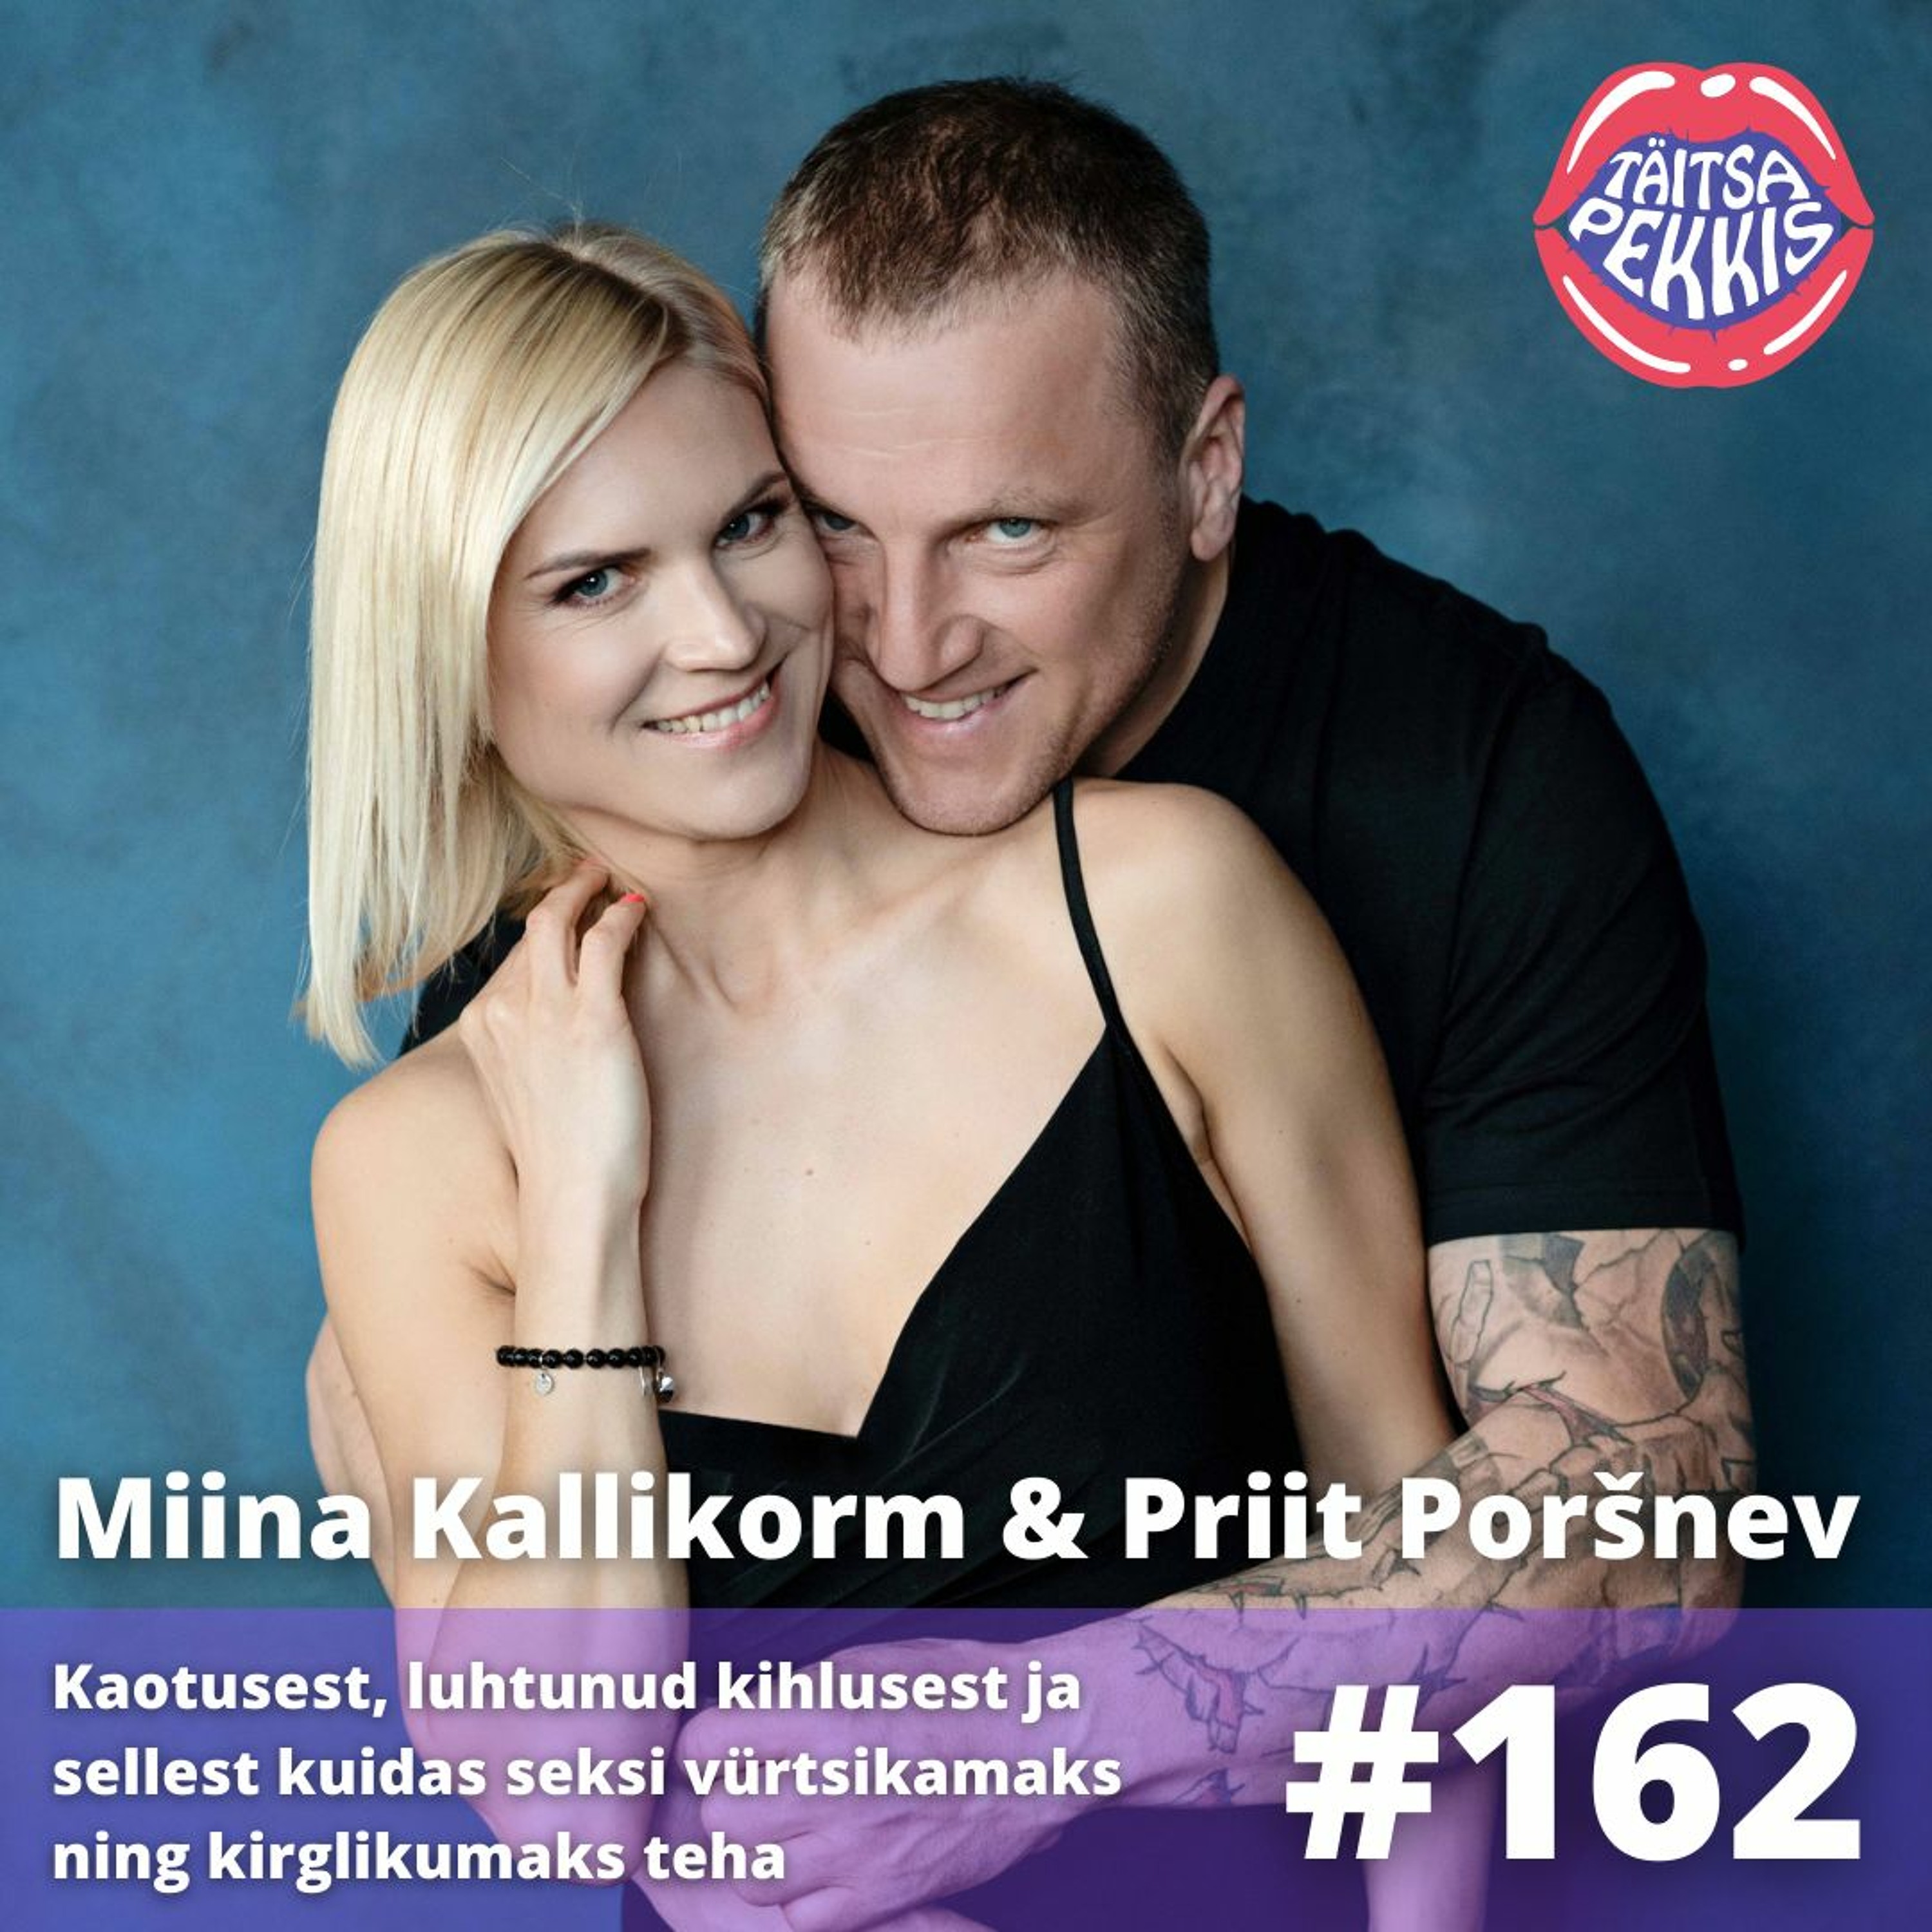 #162 – Miina & Priit – Kaotusest, luhtunud kihlusest ja sellest kuidas seksi vürtsikamaks teha